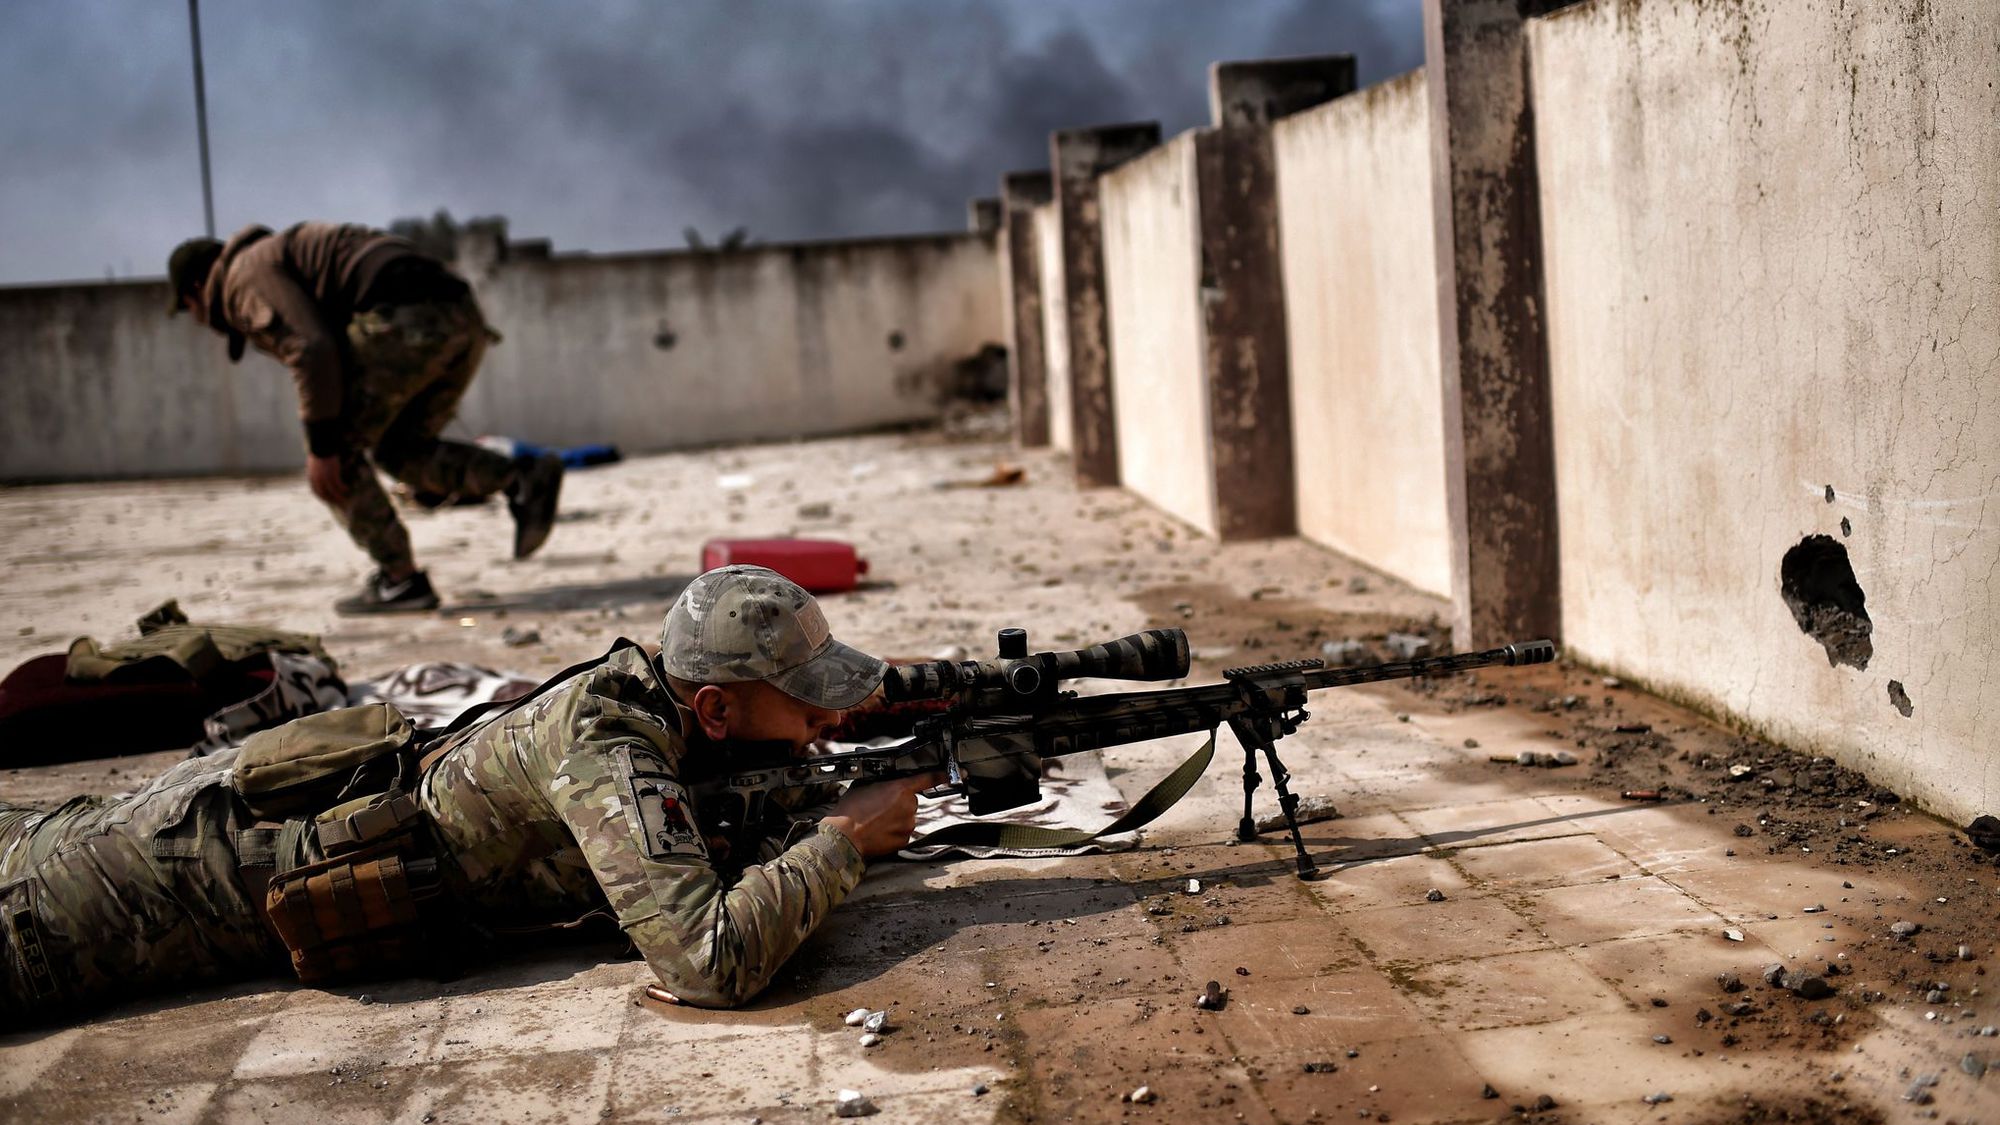 Un sniper canadien bat le record de distance d'un tir mortel en Irak - L'Express